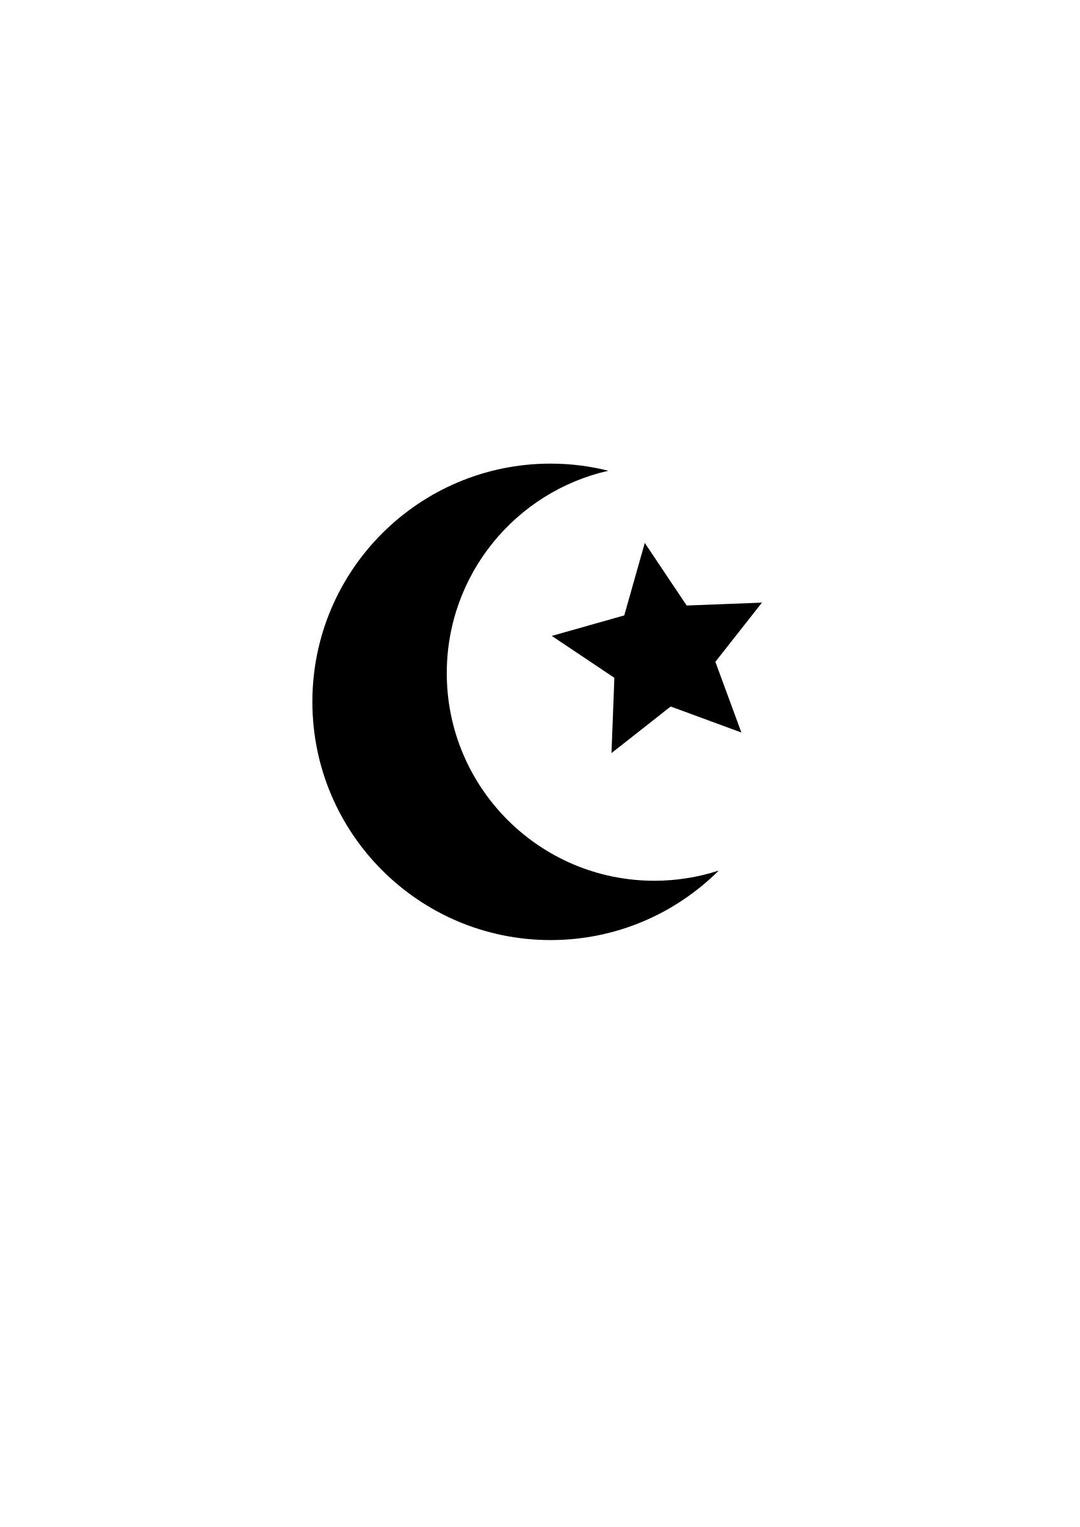 Símbolo Religión Islam png transparent